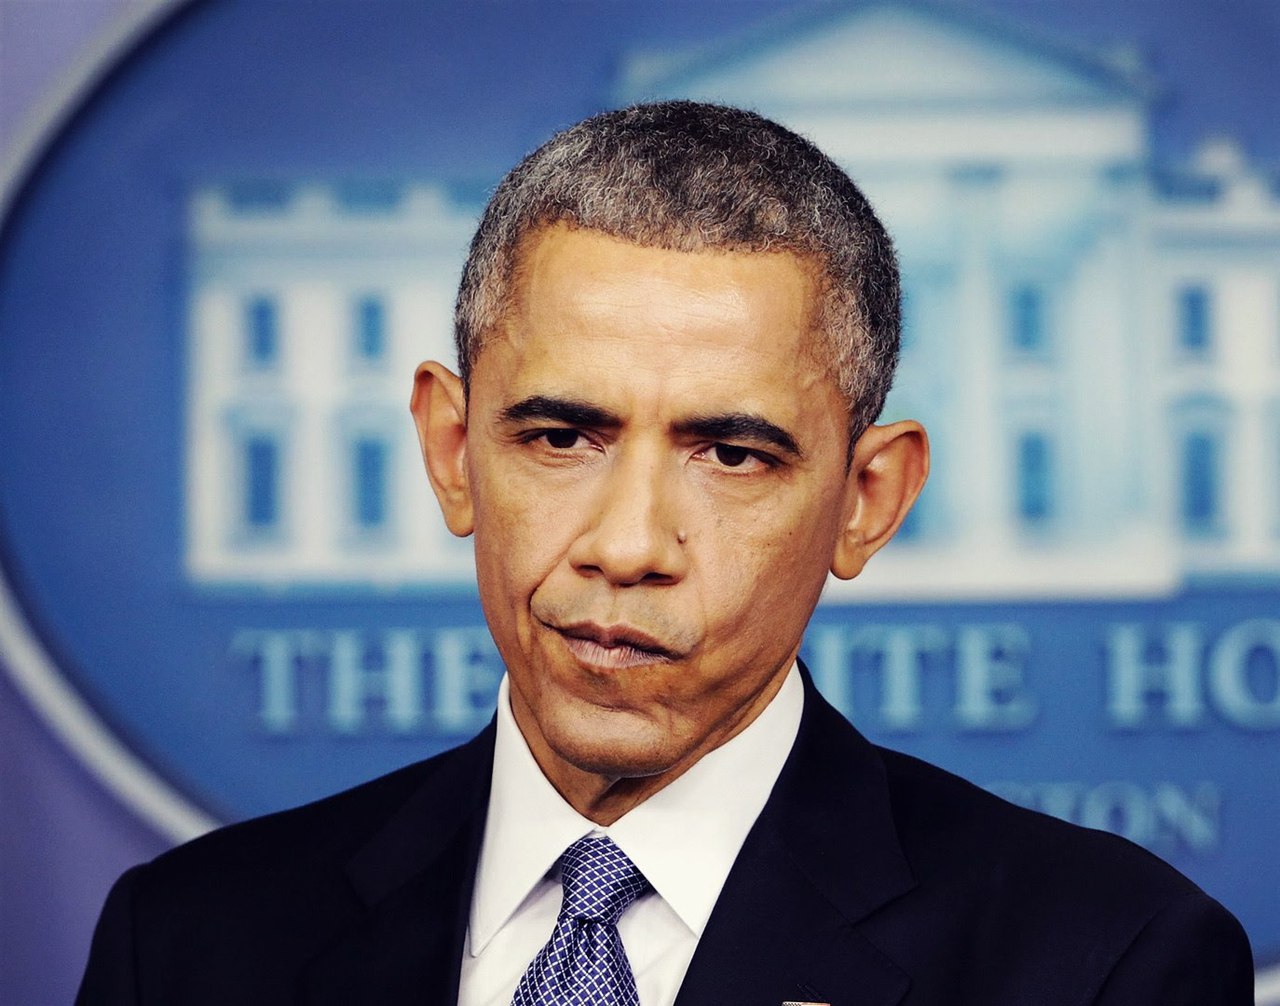 Обаму понесло: чистосердечное признание главного политического неудачника